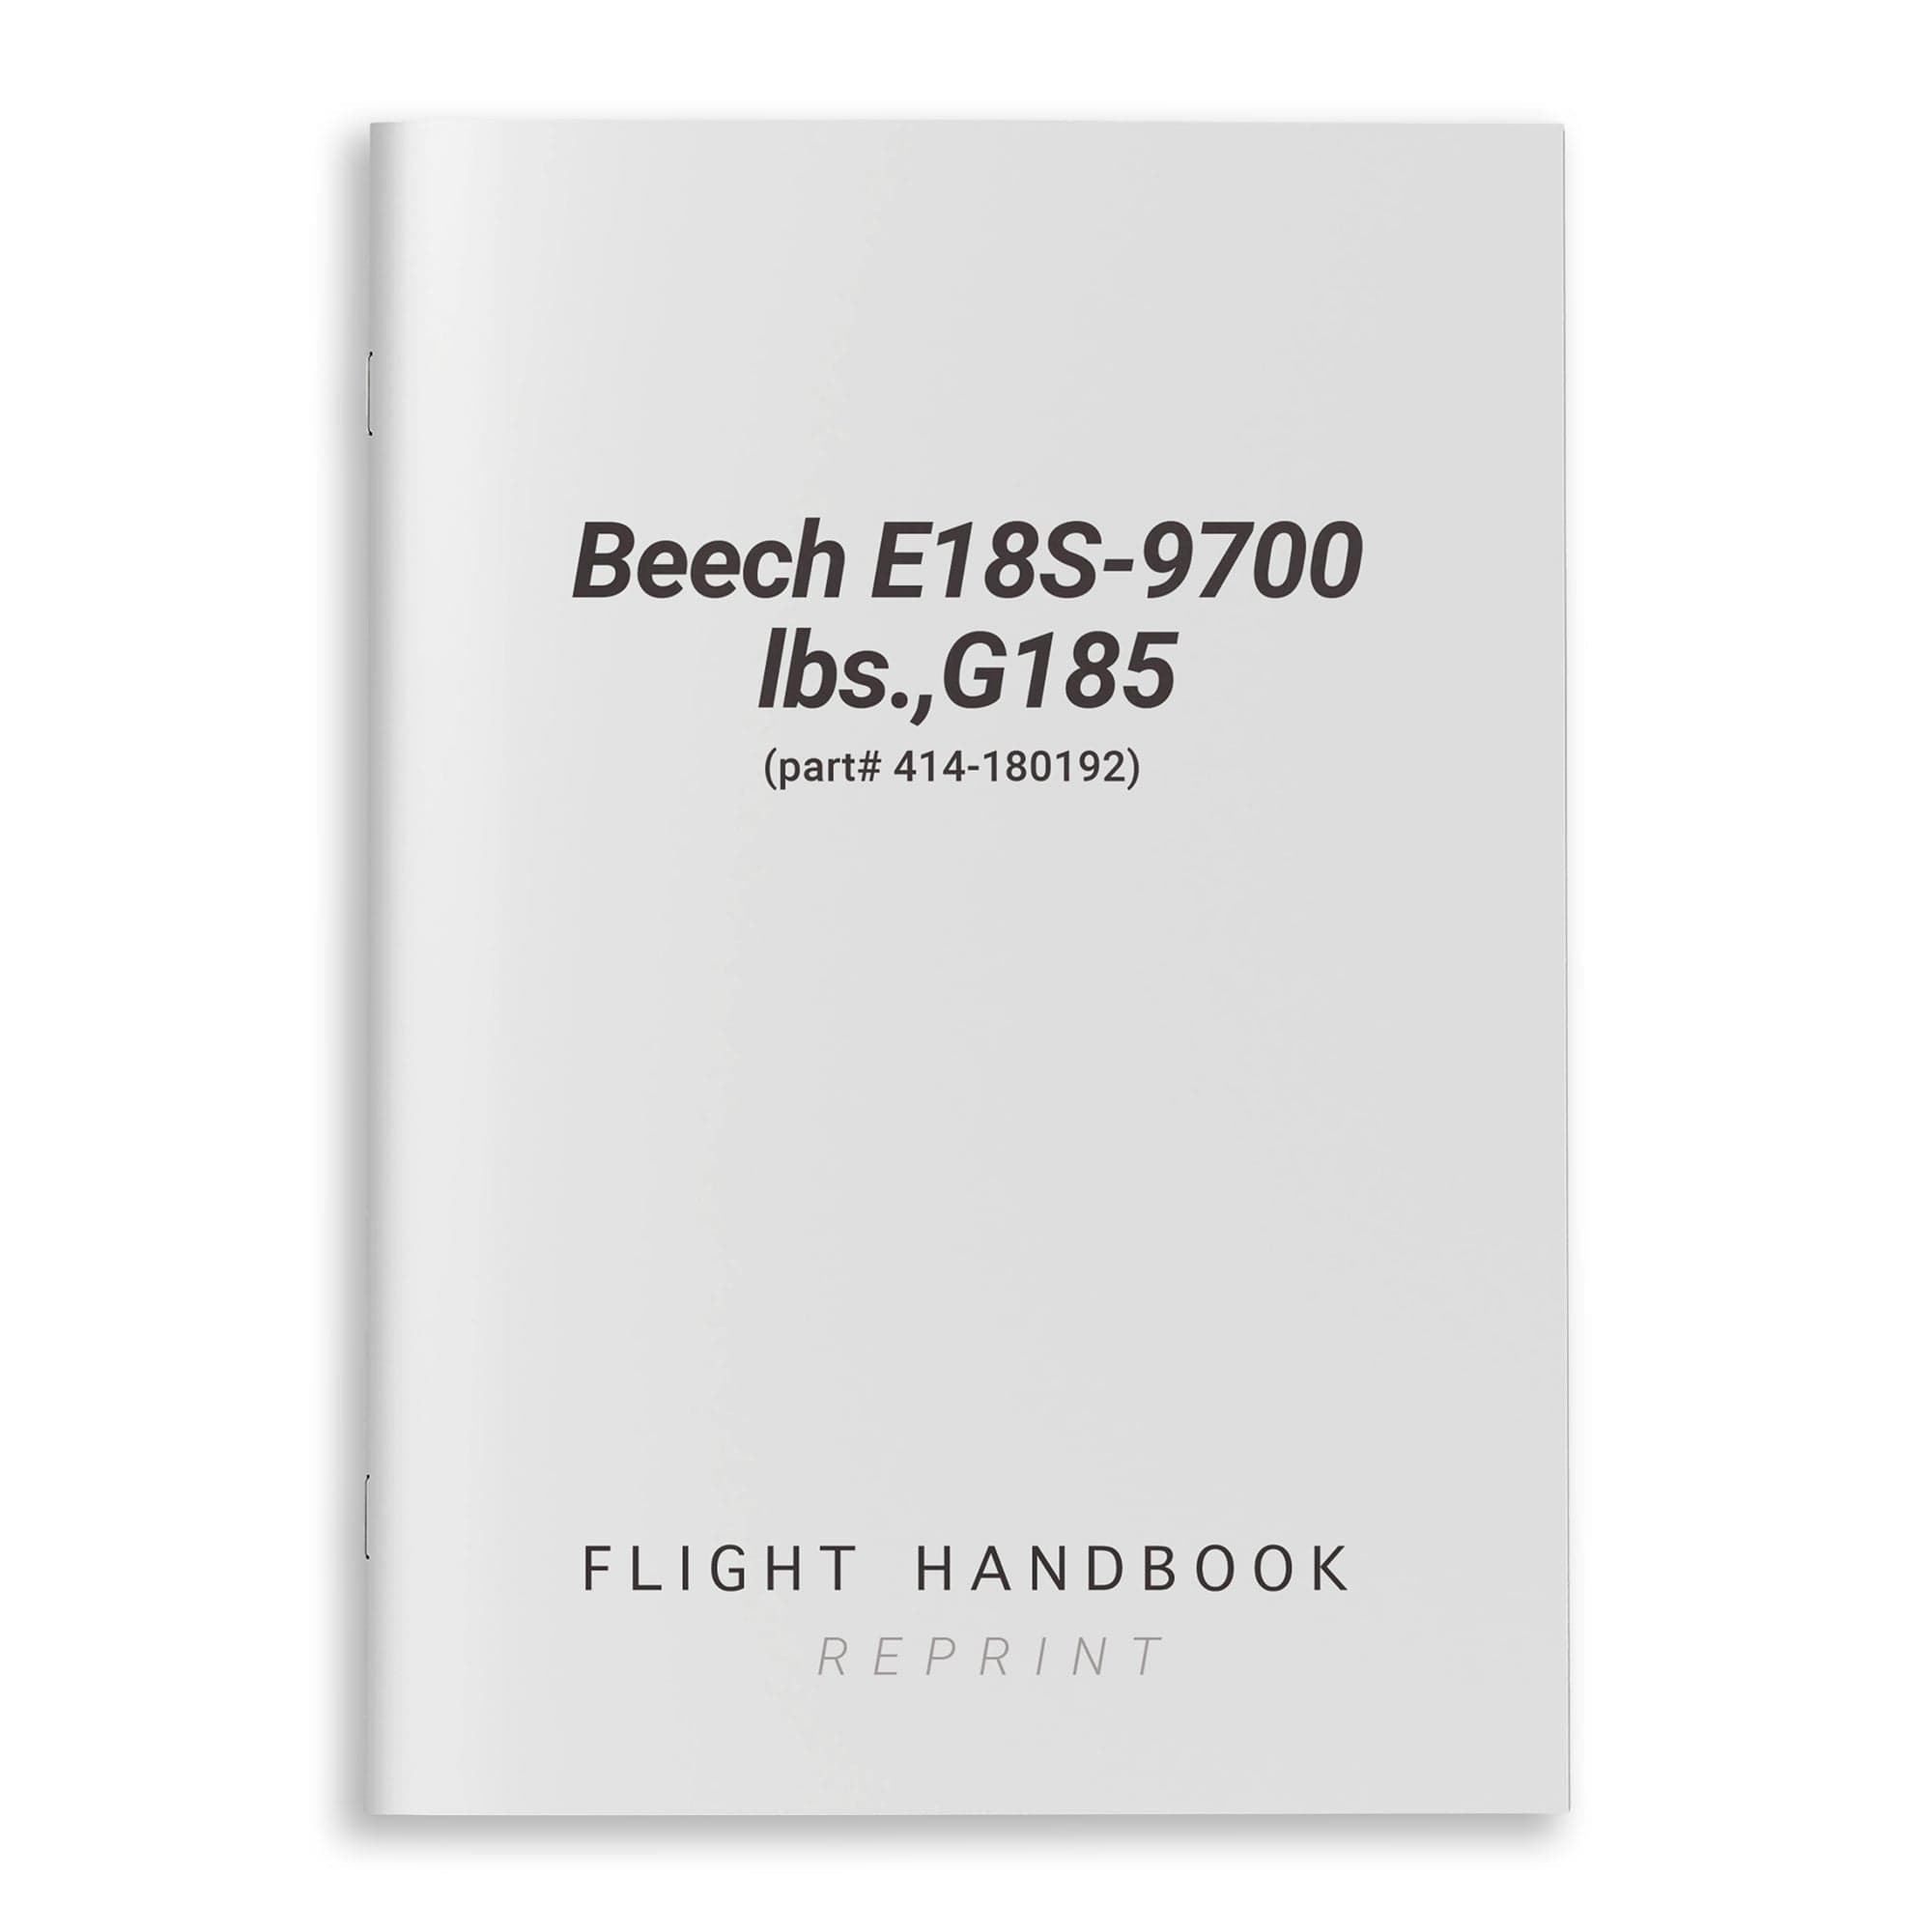 Beech E18S-9700 lbs. G185 Flight Handbook (part# 414-180192)